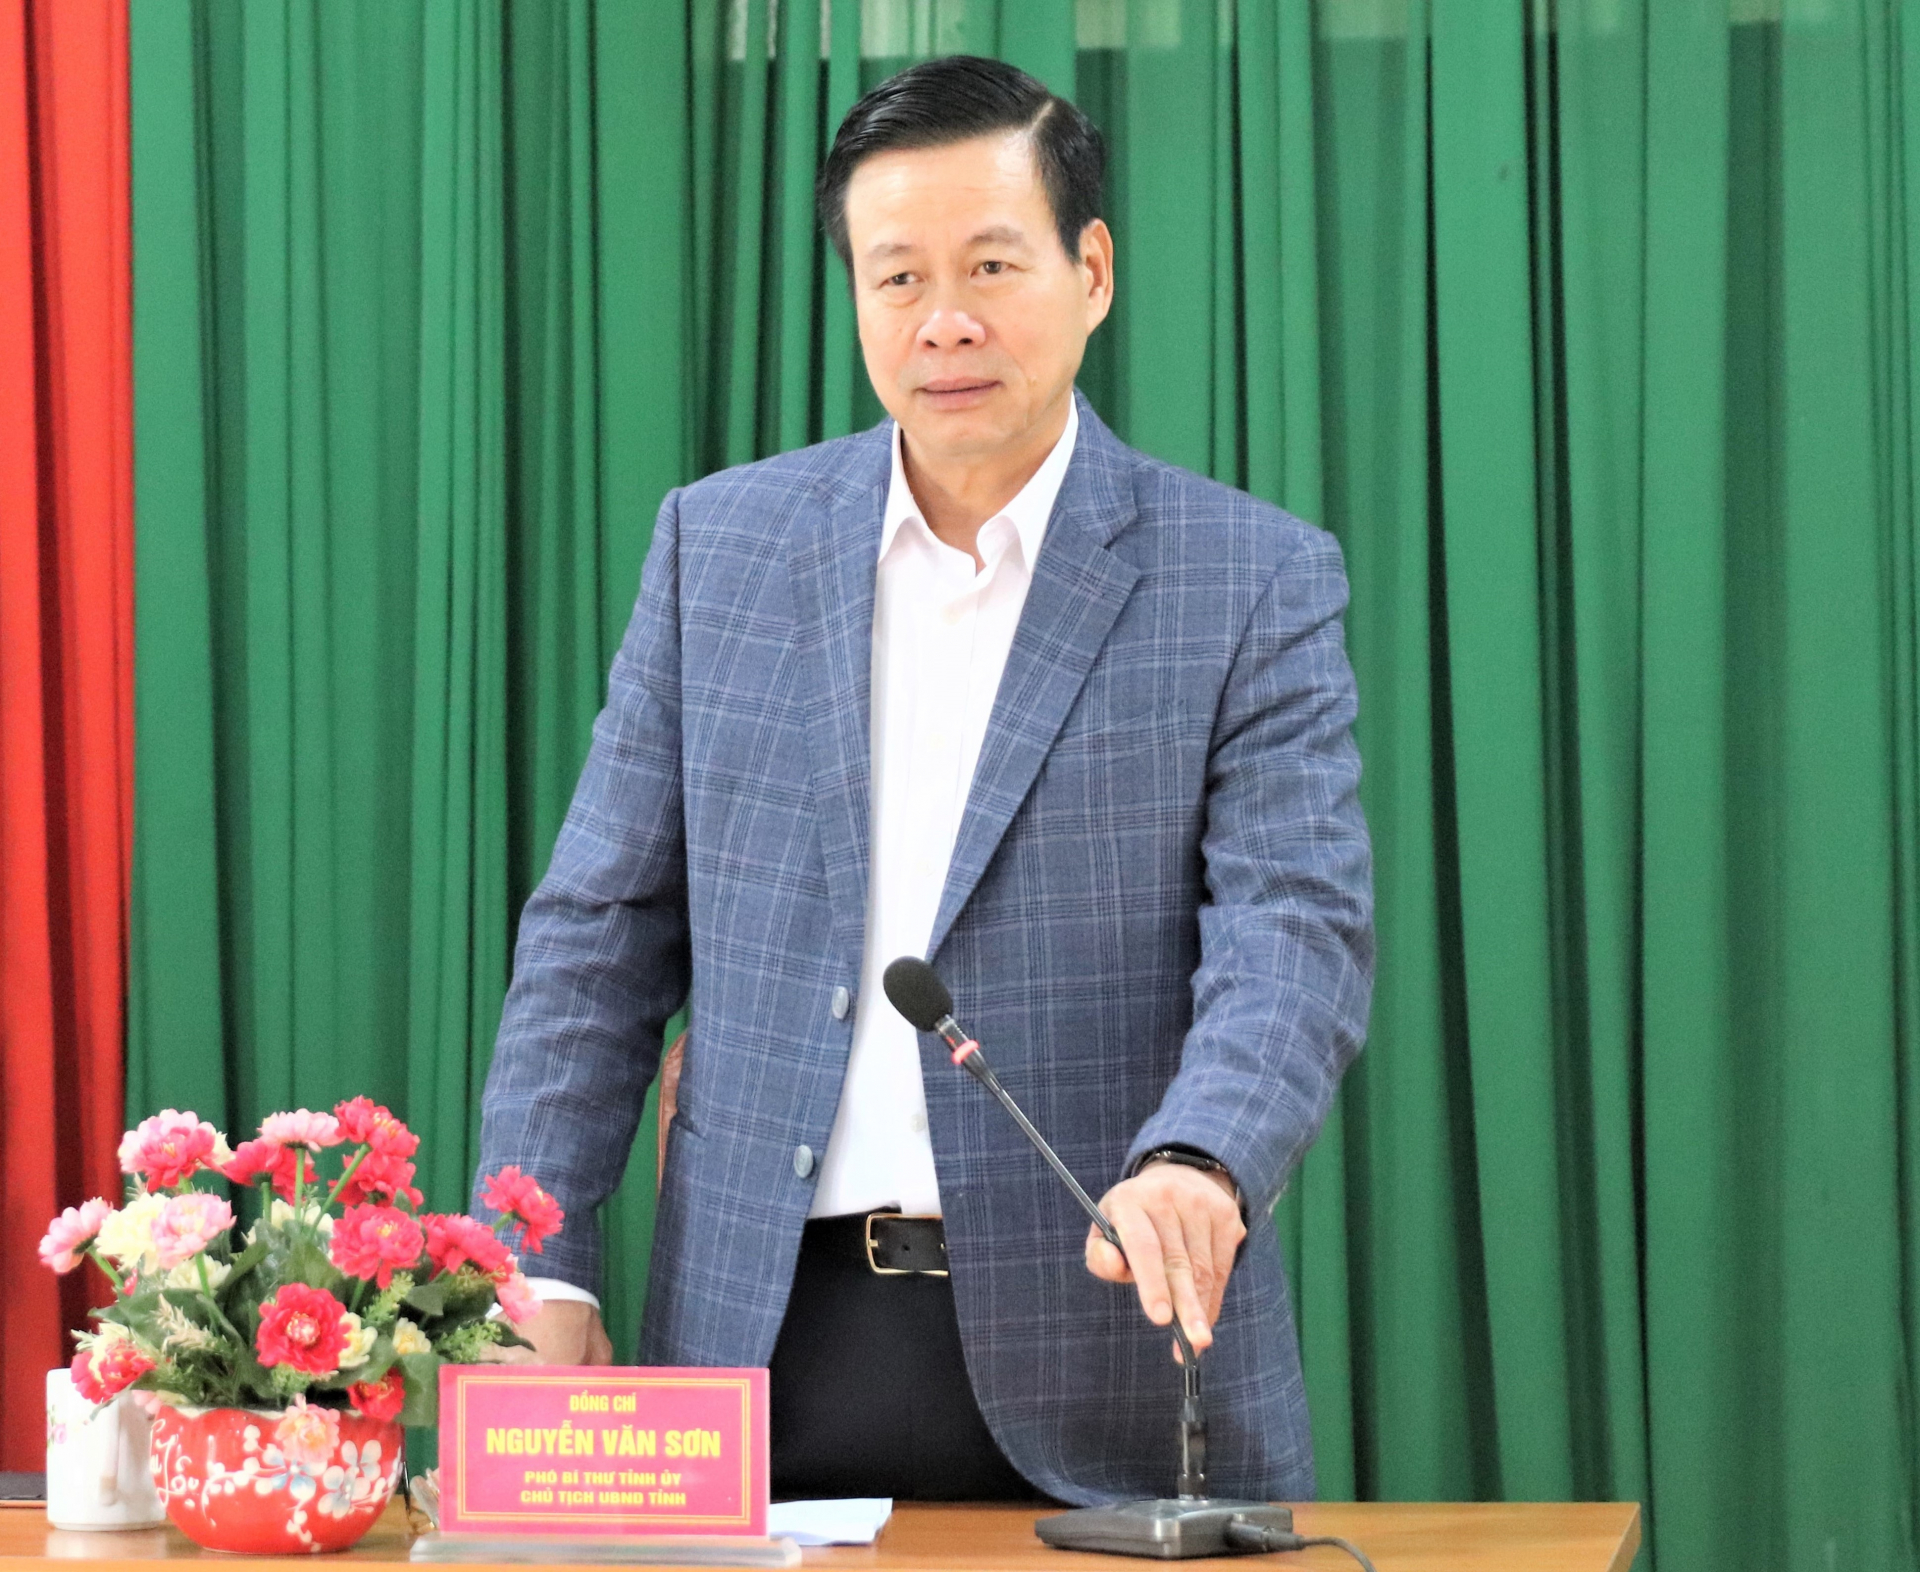 Chủ tịch UBND tỉnh Nguyễn Văn Sơn kết luận buổi làm việc với xã Hữu Sản.